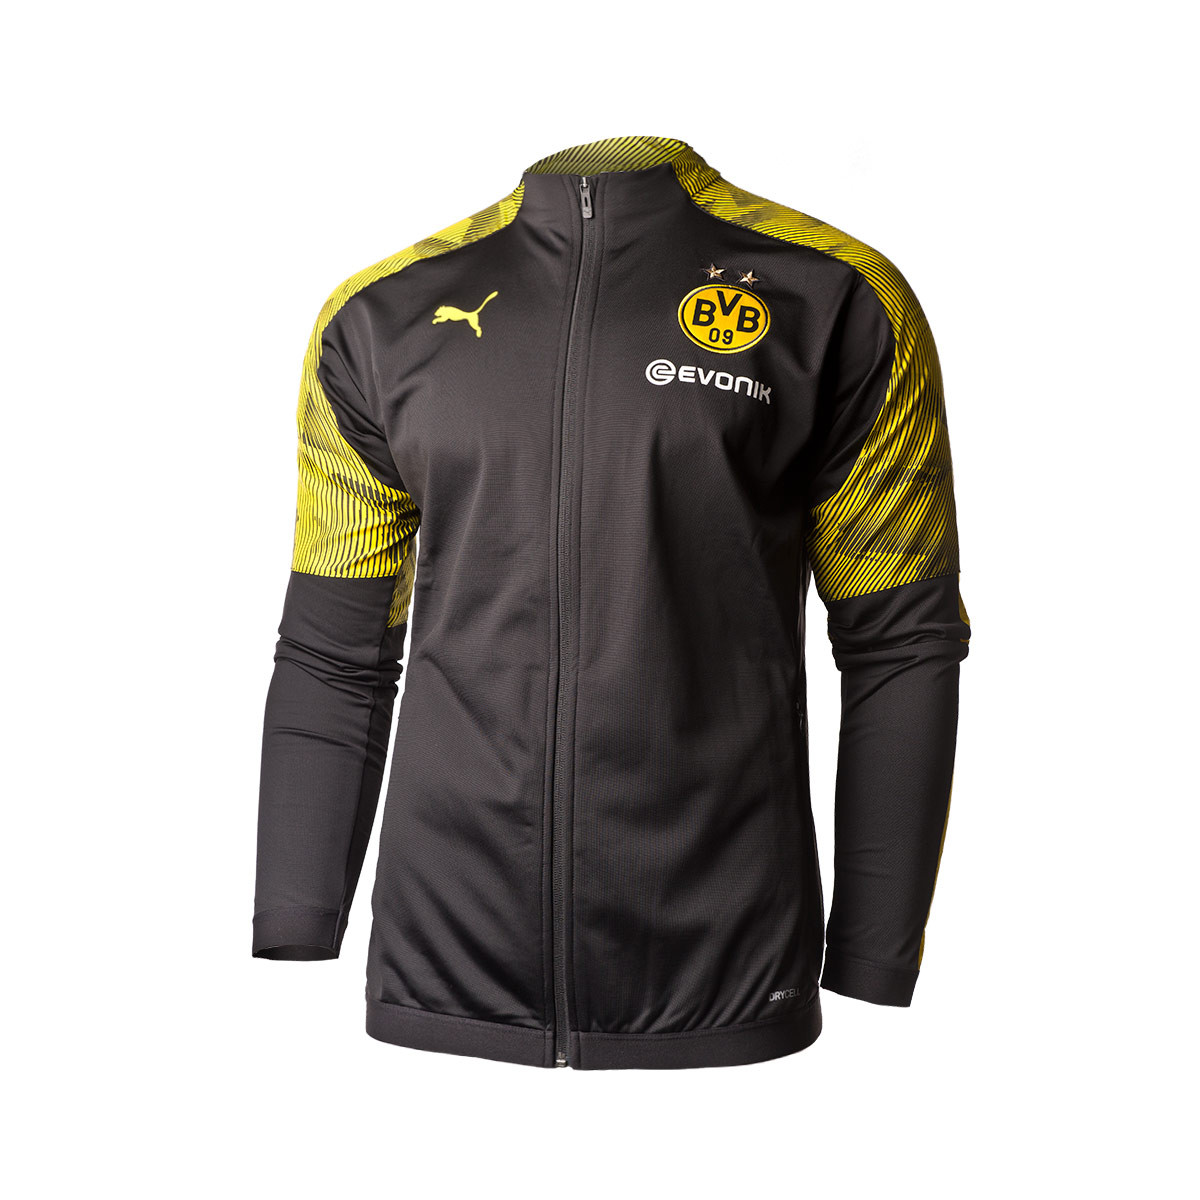 Chamarra Puma BVB Borussia Dortmund Poly 2019-2020 Puma black-Cyber yellow  - Tienda de fútbol Fútbol Emotion